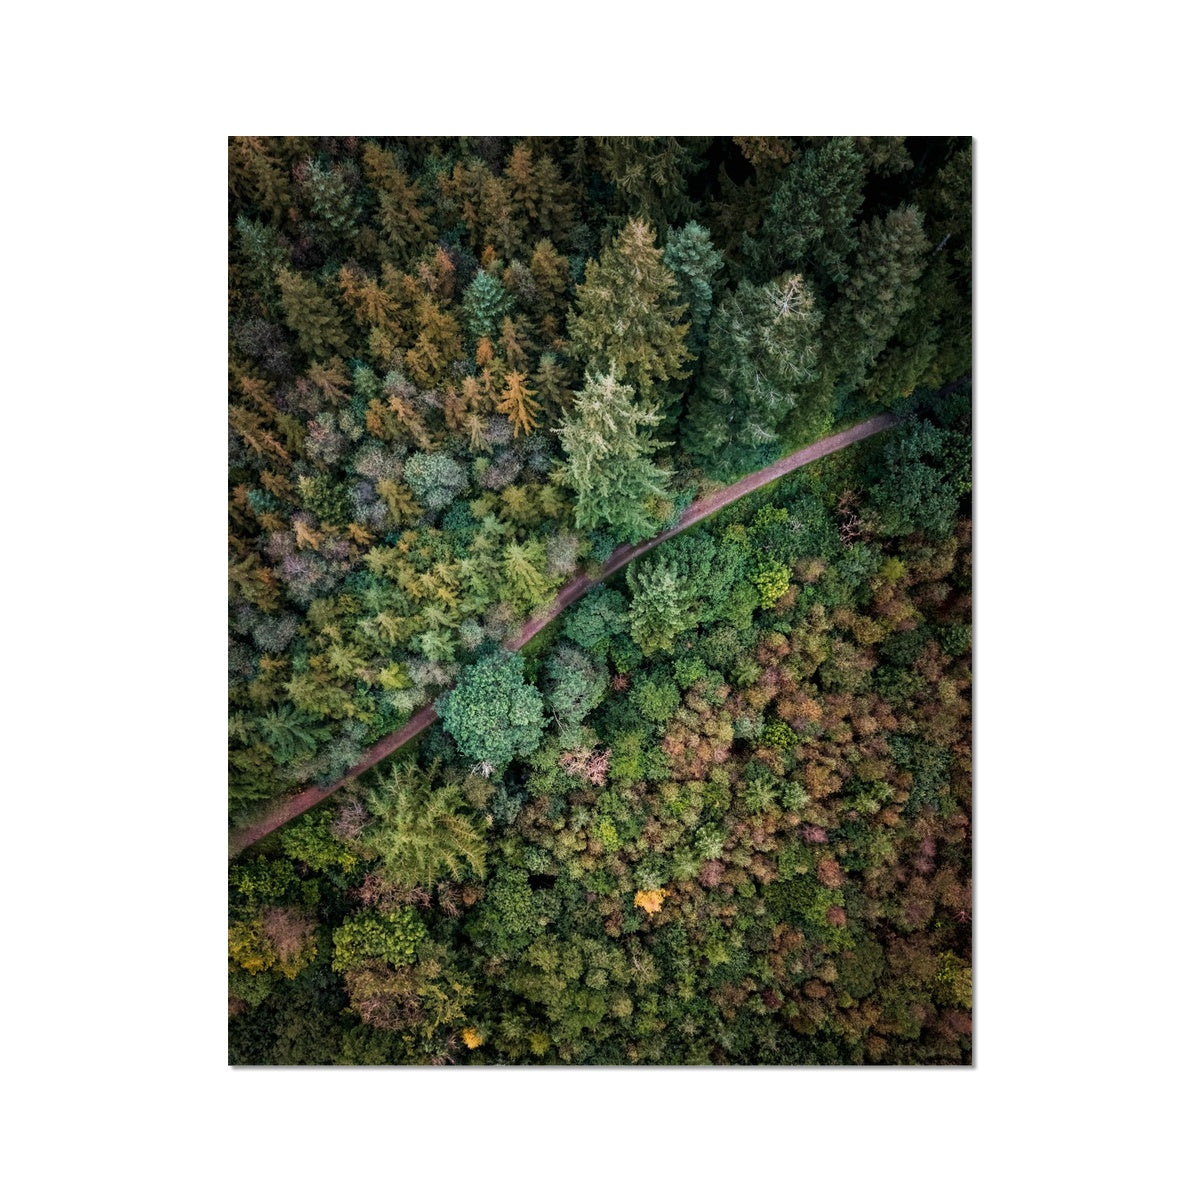 cardinham woods